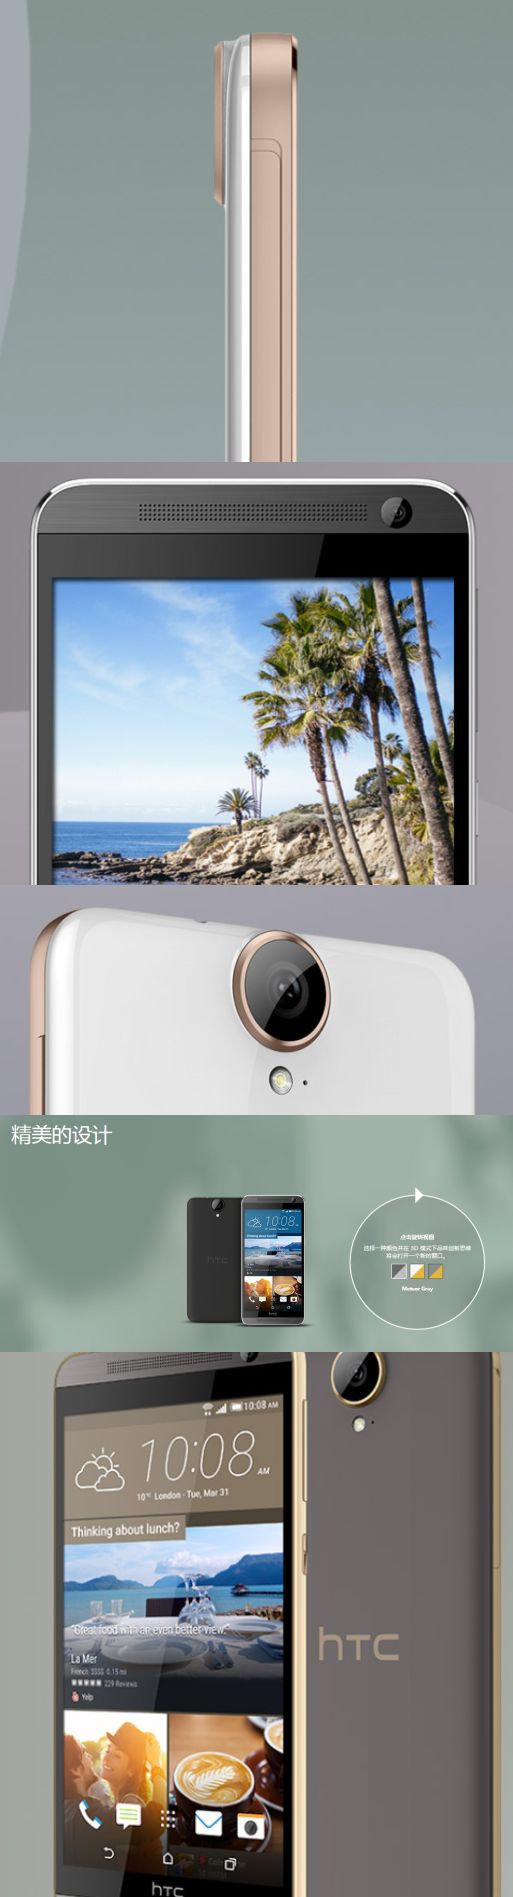 Így néz ki a HTC One E9 Plus!